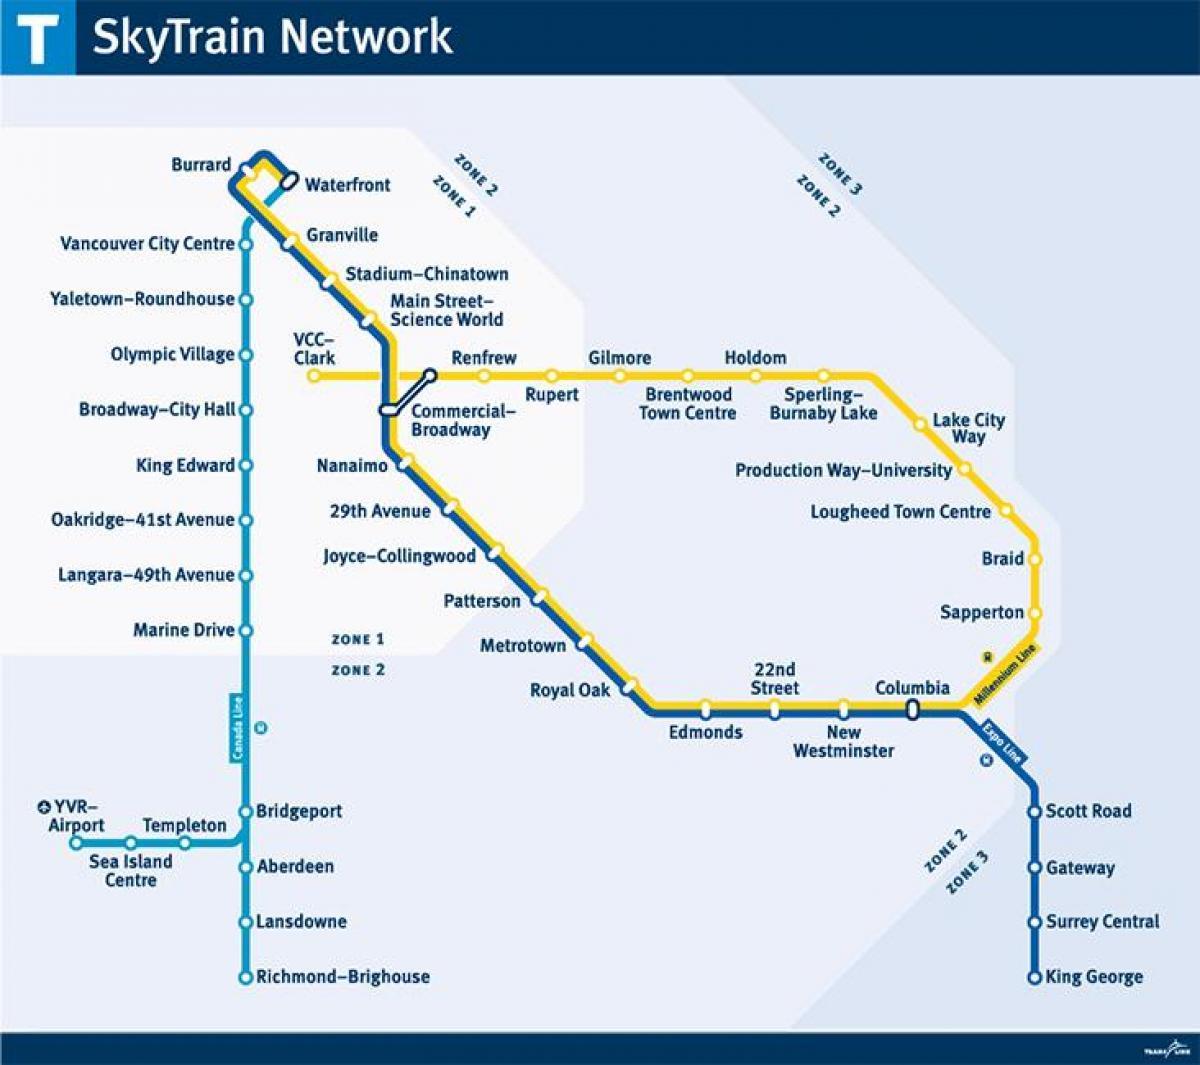 skytrain વાક્ય નકશો